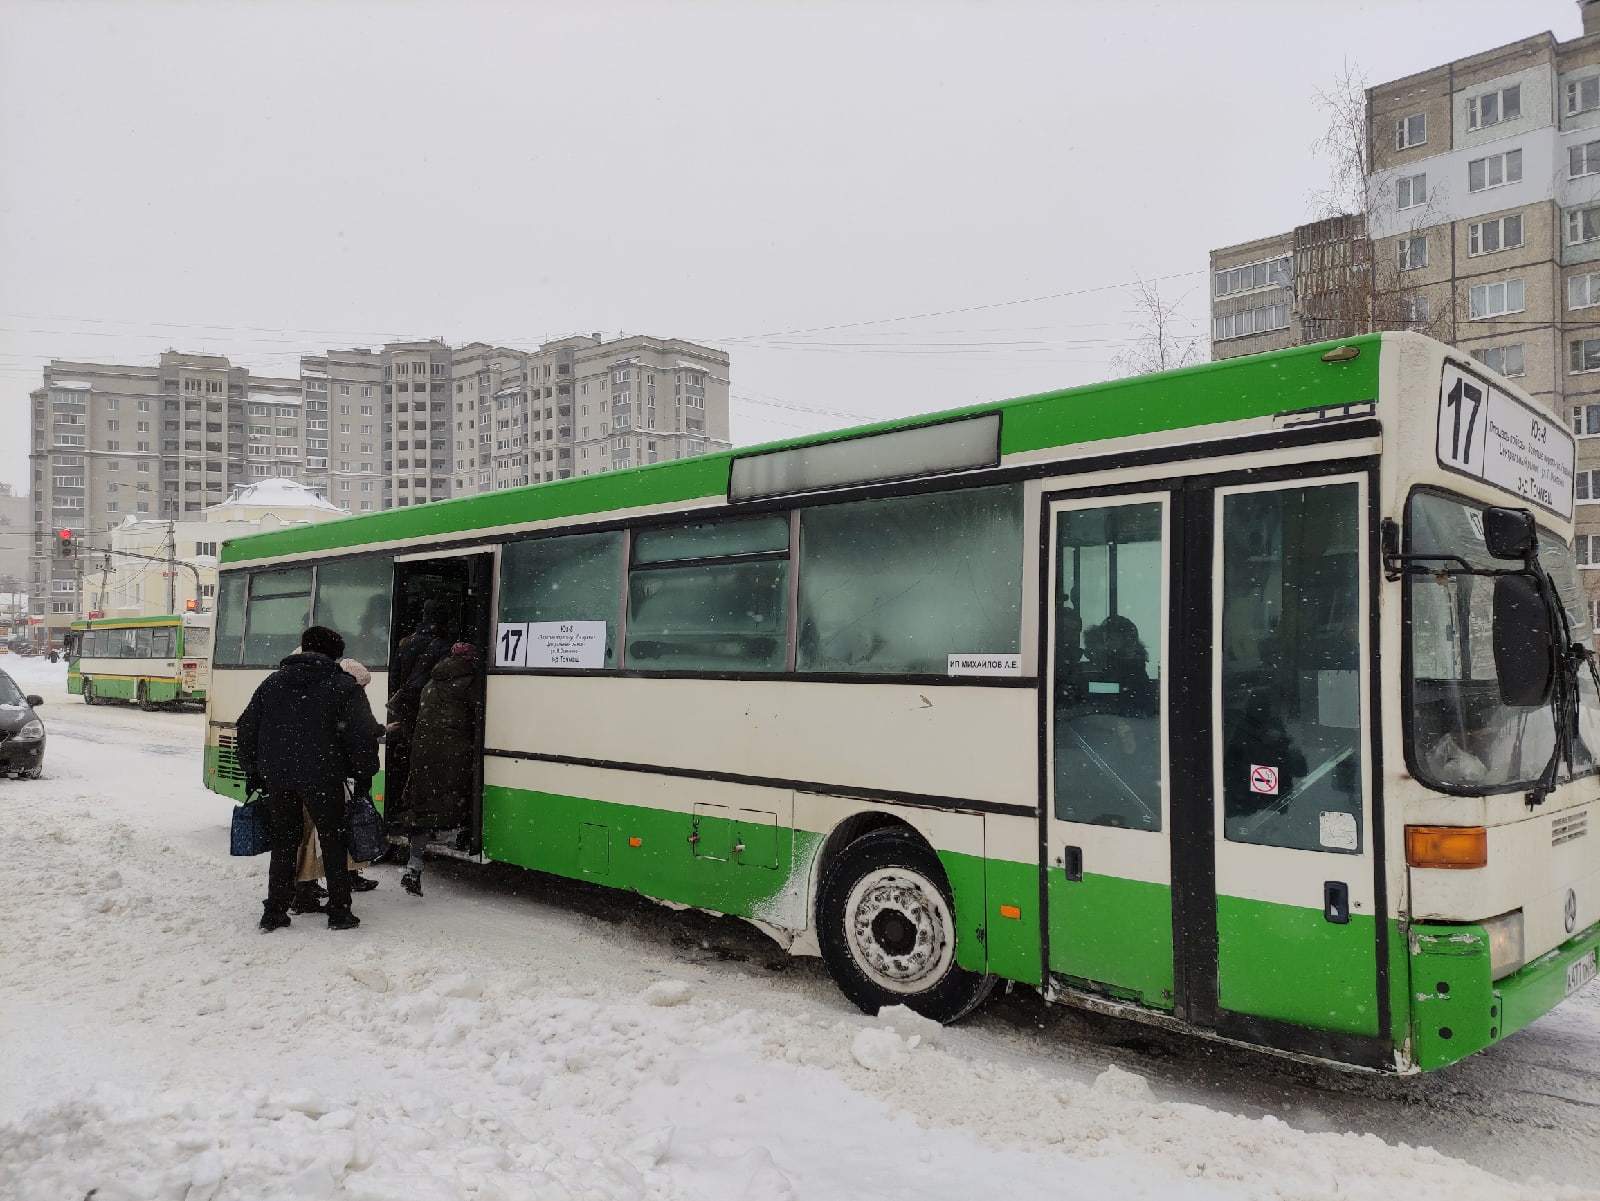 Суд обязал ИП Михайлова оборудовать автобусы для инвалидов